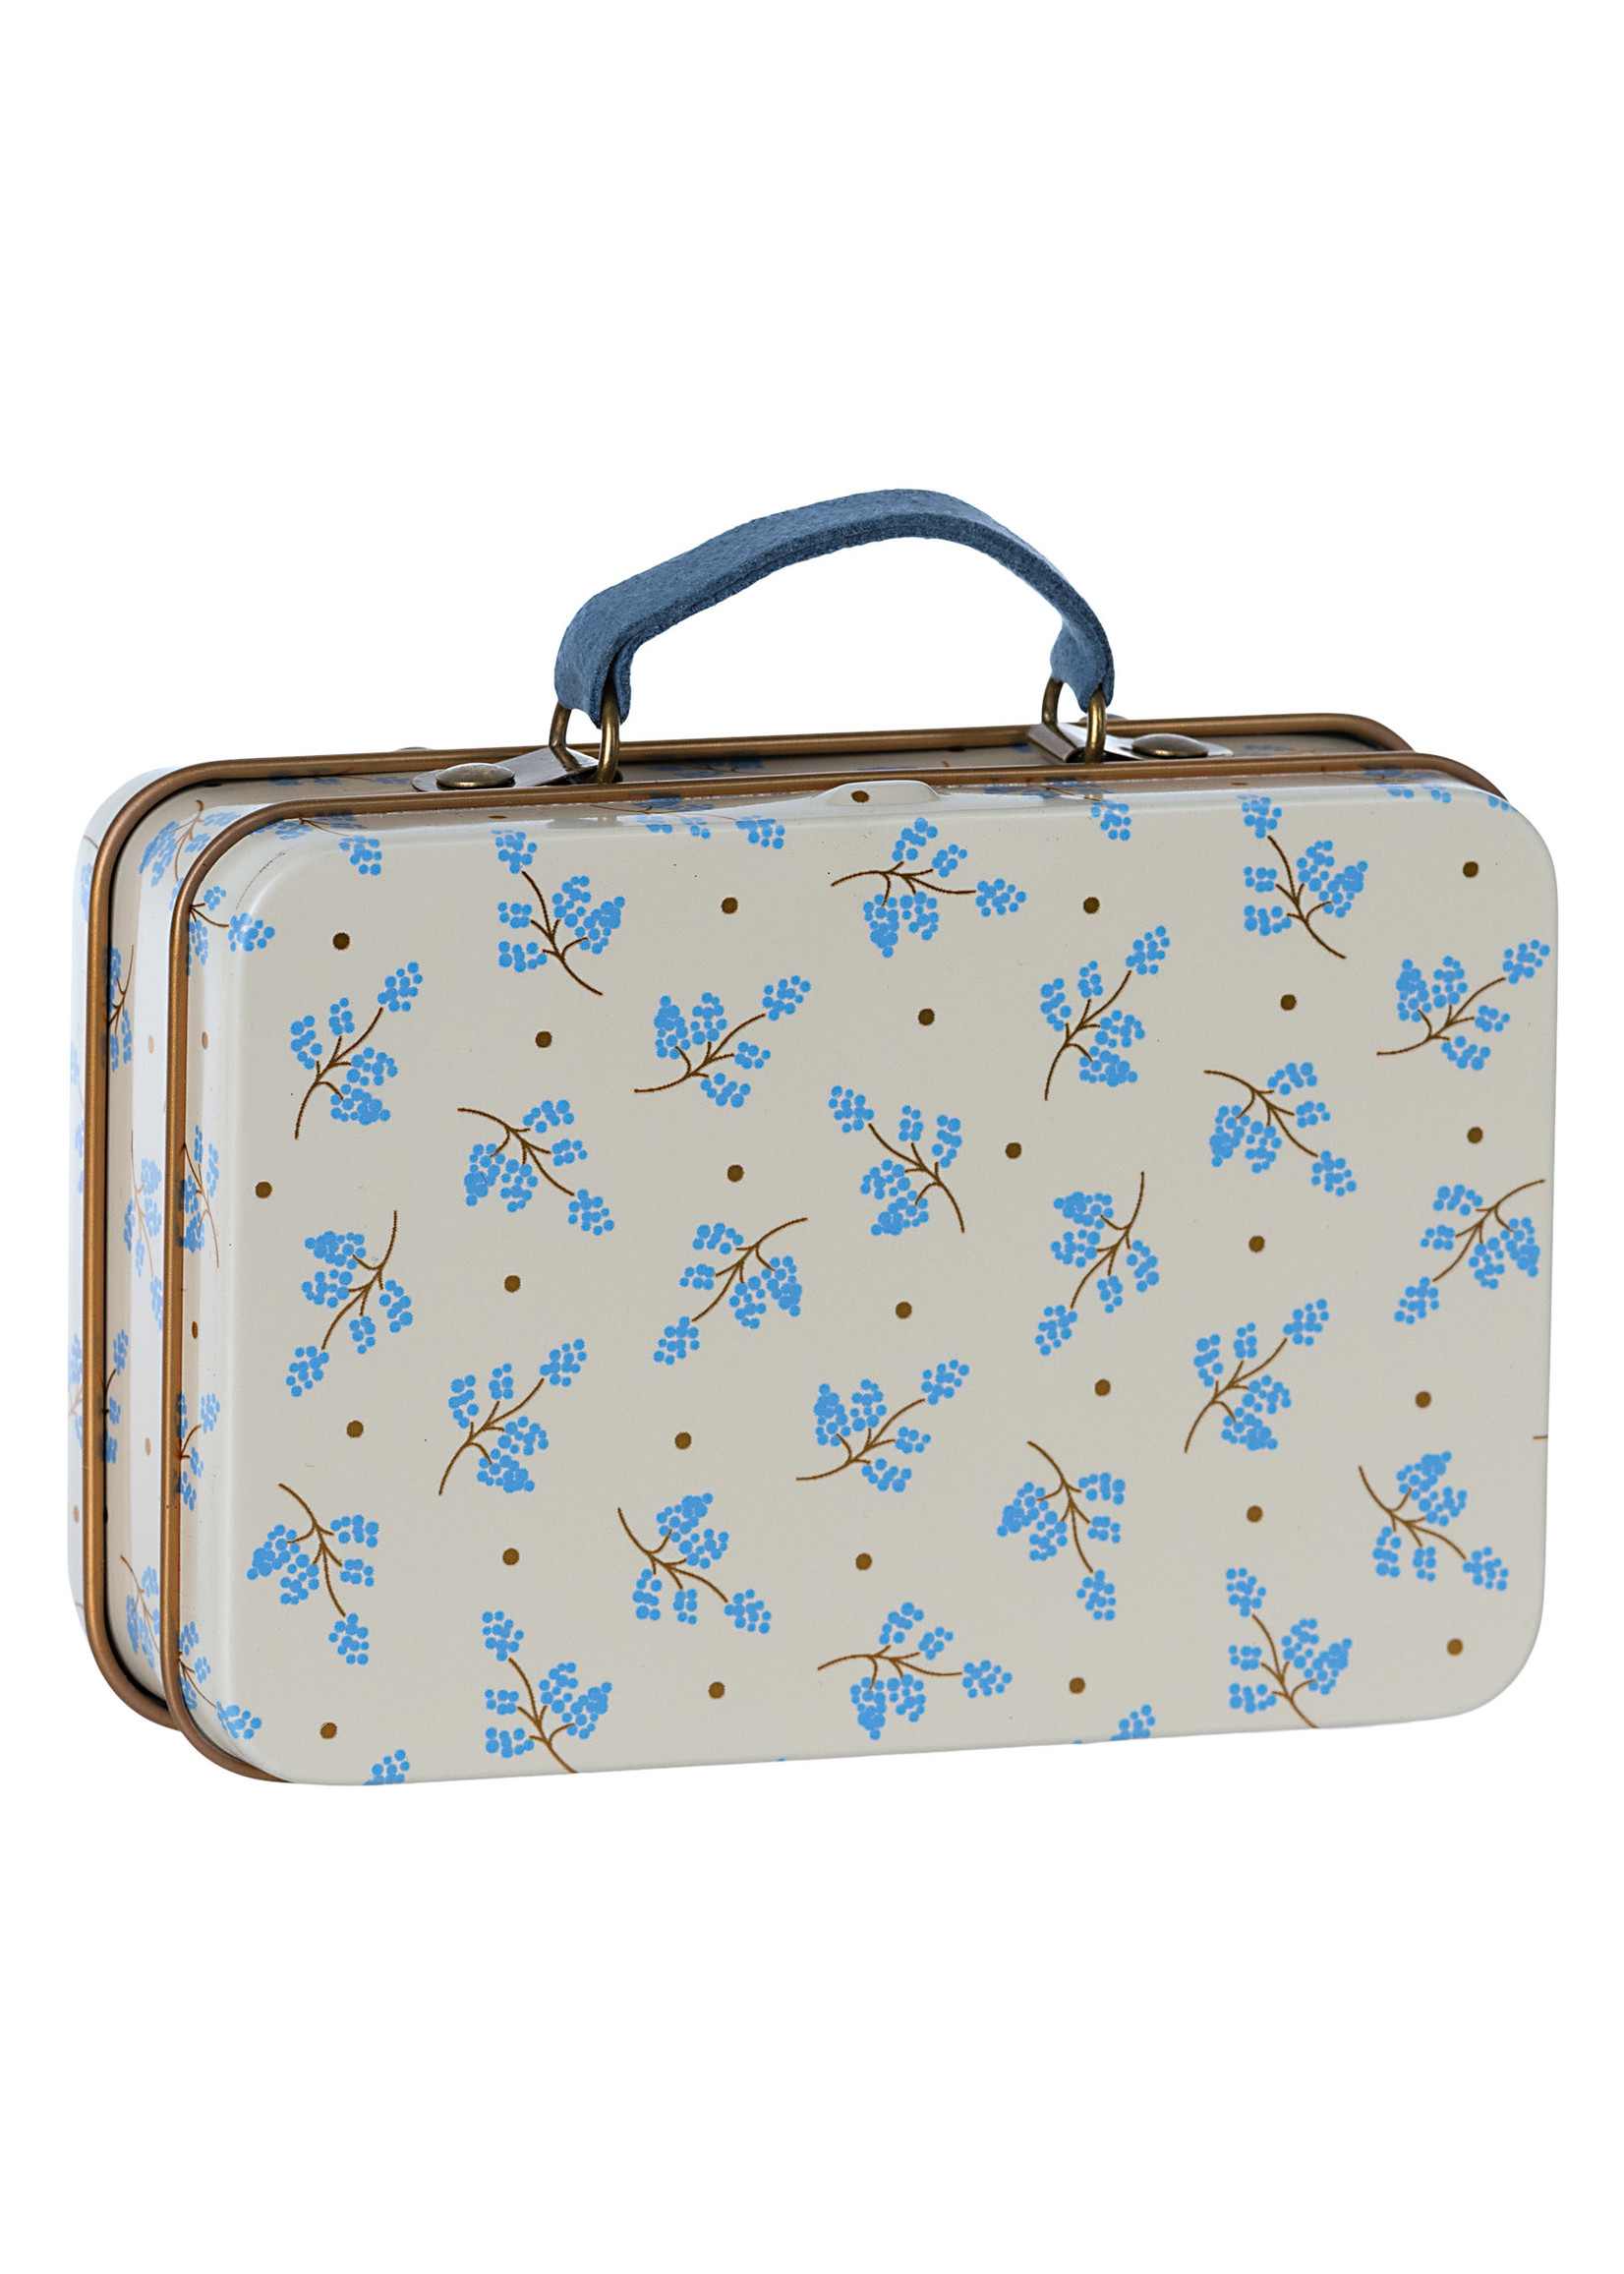 Maileg Suitcase - Madelaine Blue